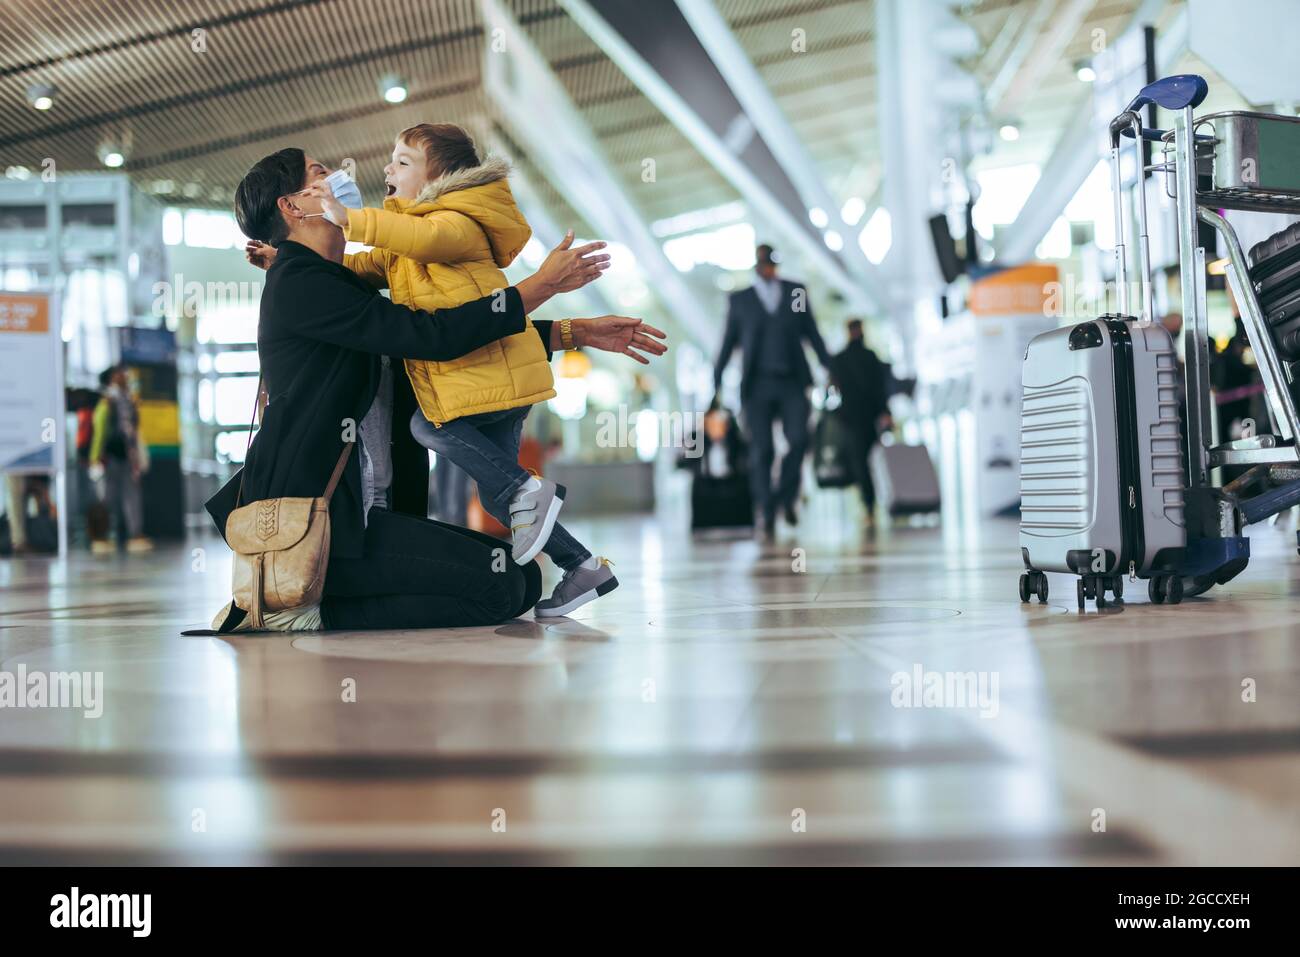 Mutter begrüßte ihr Kind während der Pandemie mit offenen Armen am Flughafen. Frau in Gesichtsmaske trifft ihren Sohn am Flughafen. Stockfoto